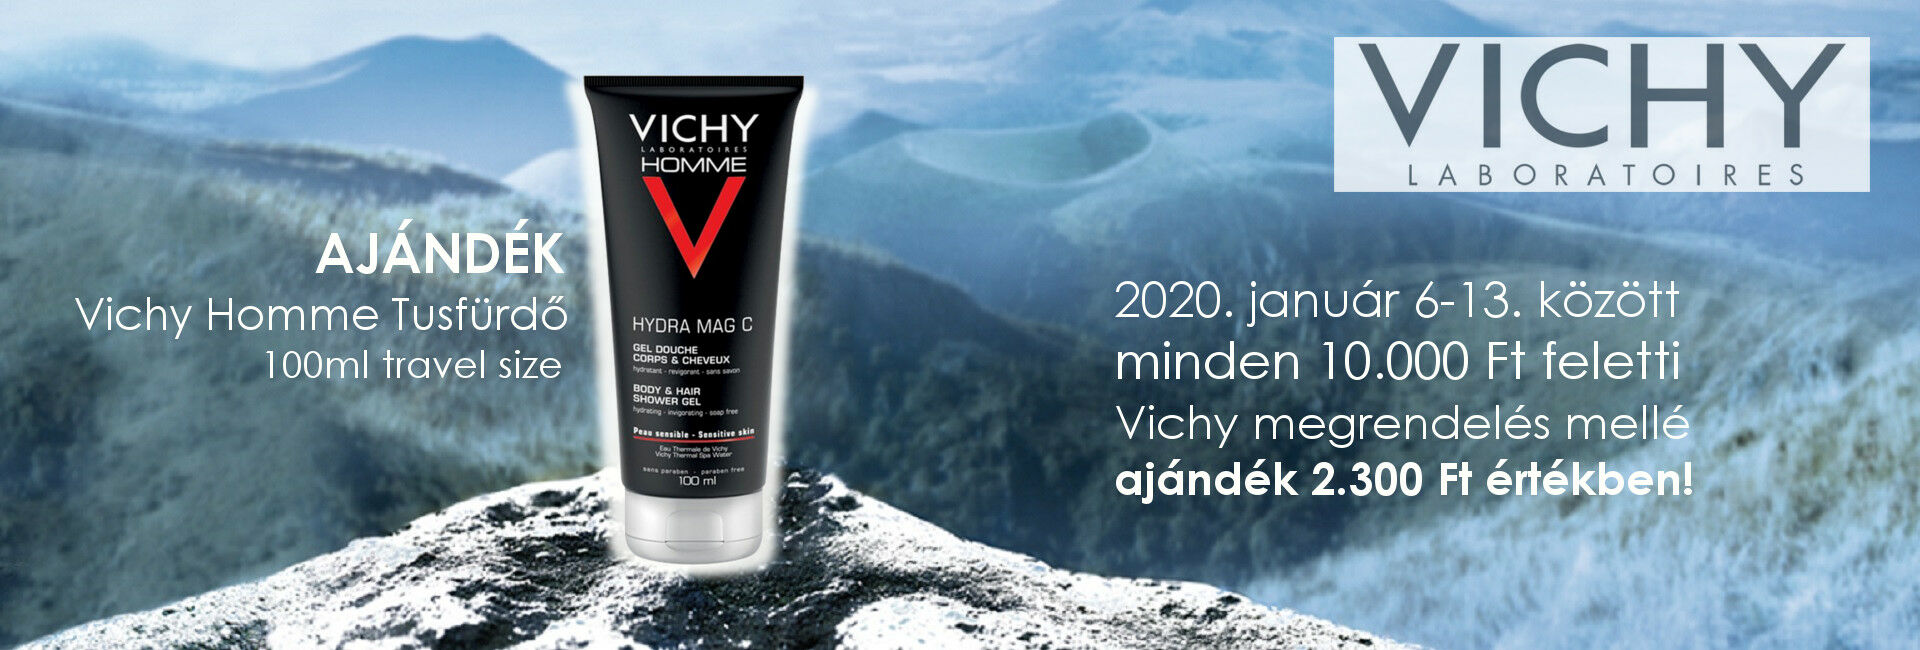 2020. január 6-13. között minden 10.000 Ft feletti Vichy megrendelés mellé travel size Vichy Homme tusfürdő 100ml-t adunk ajándékba 2.300 Ft értékben!